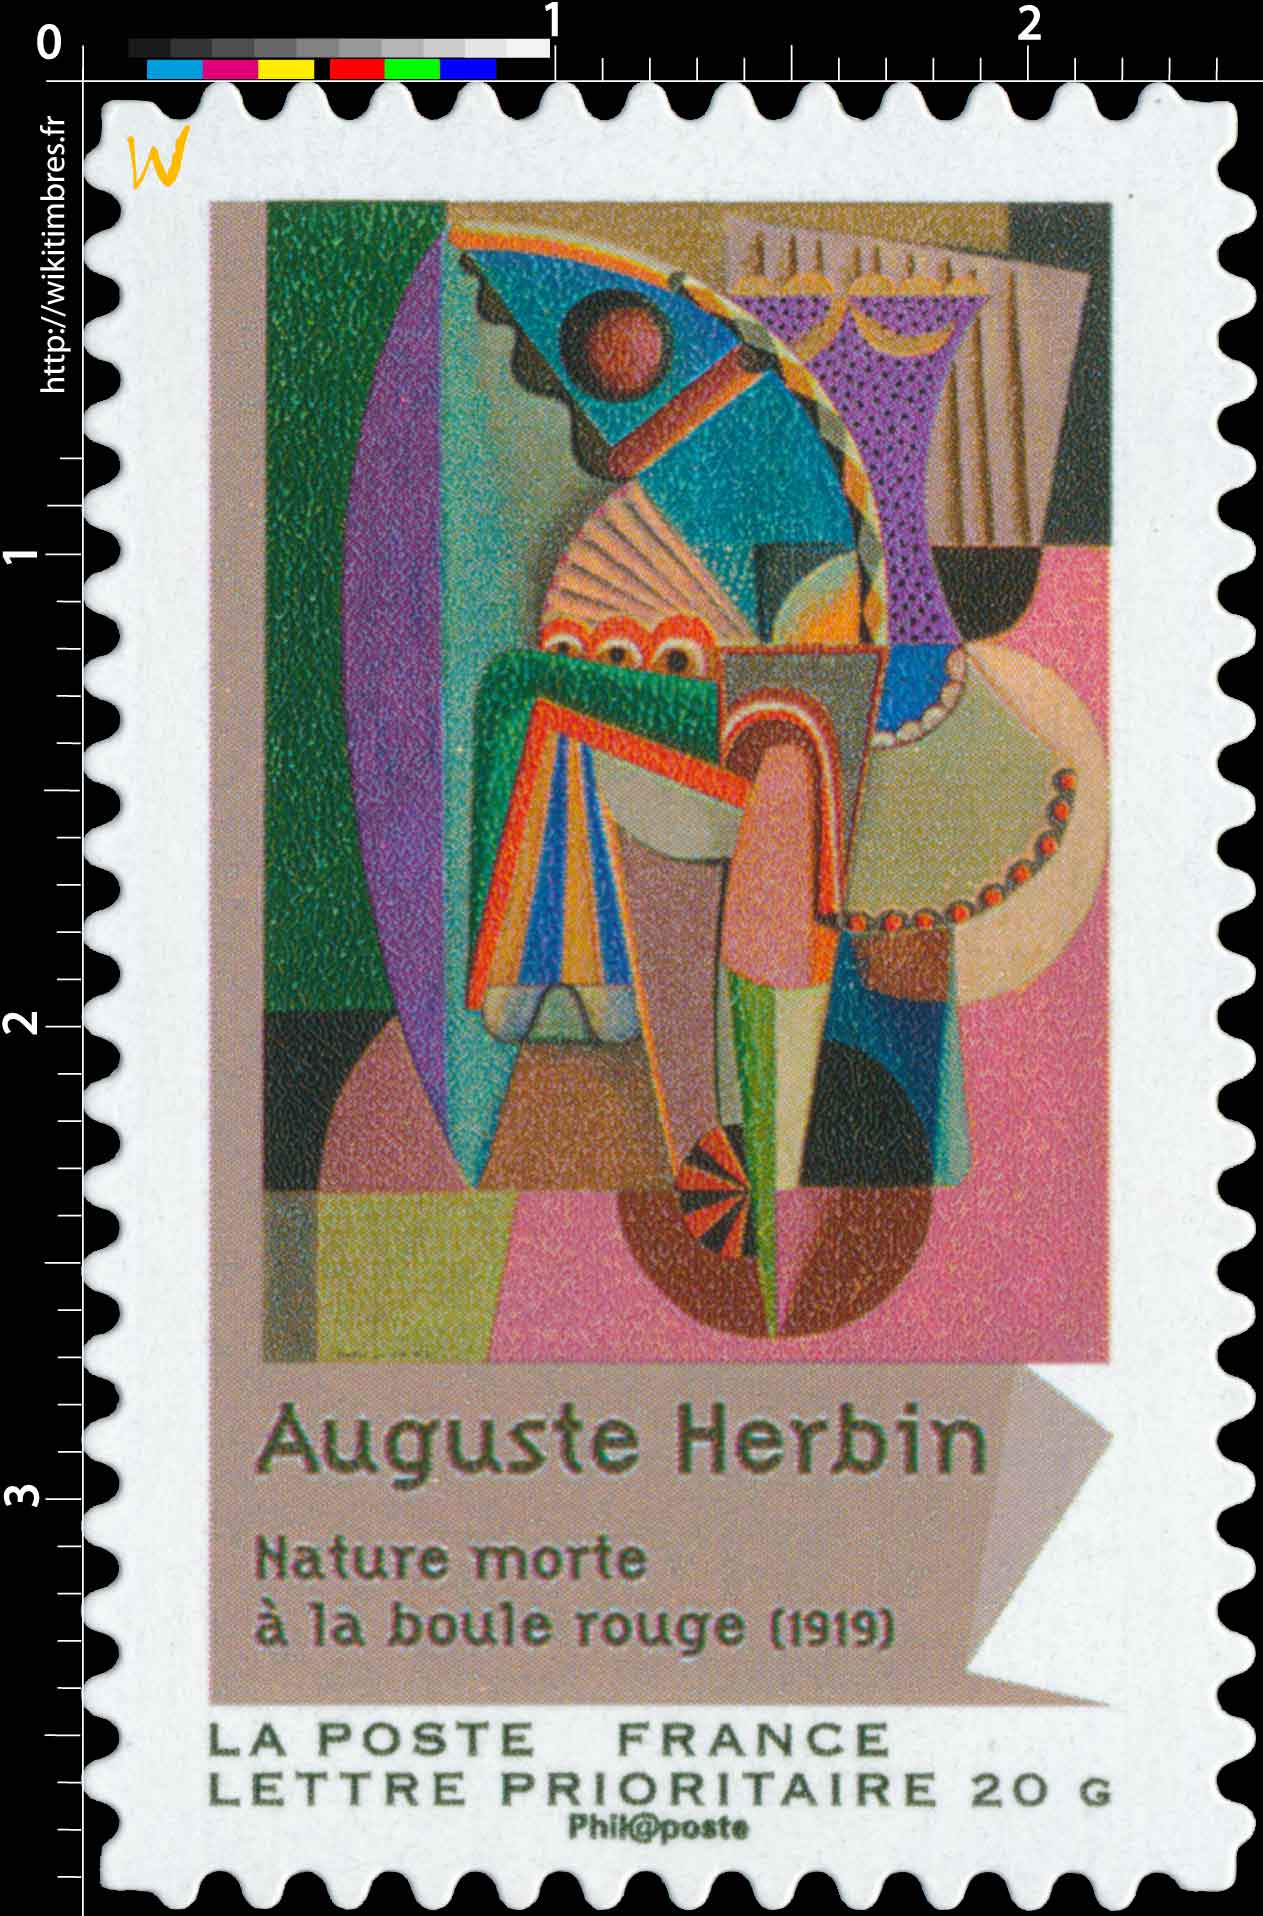 Auguste Herbin nature morte à la boule rouge (1919)